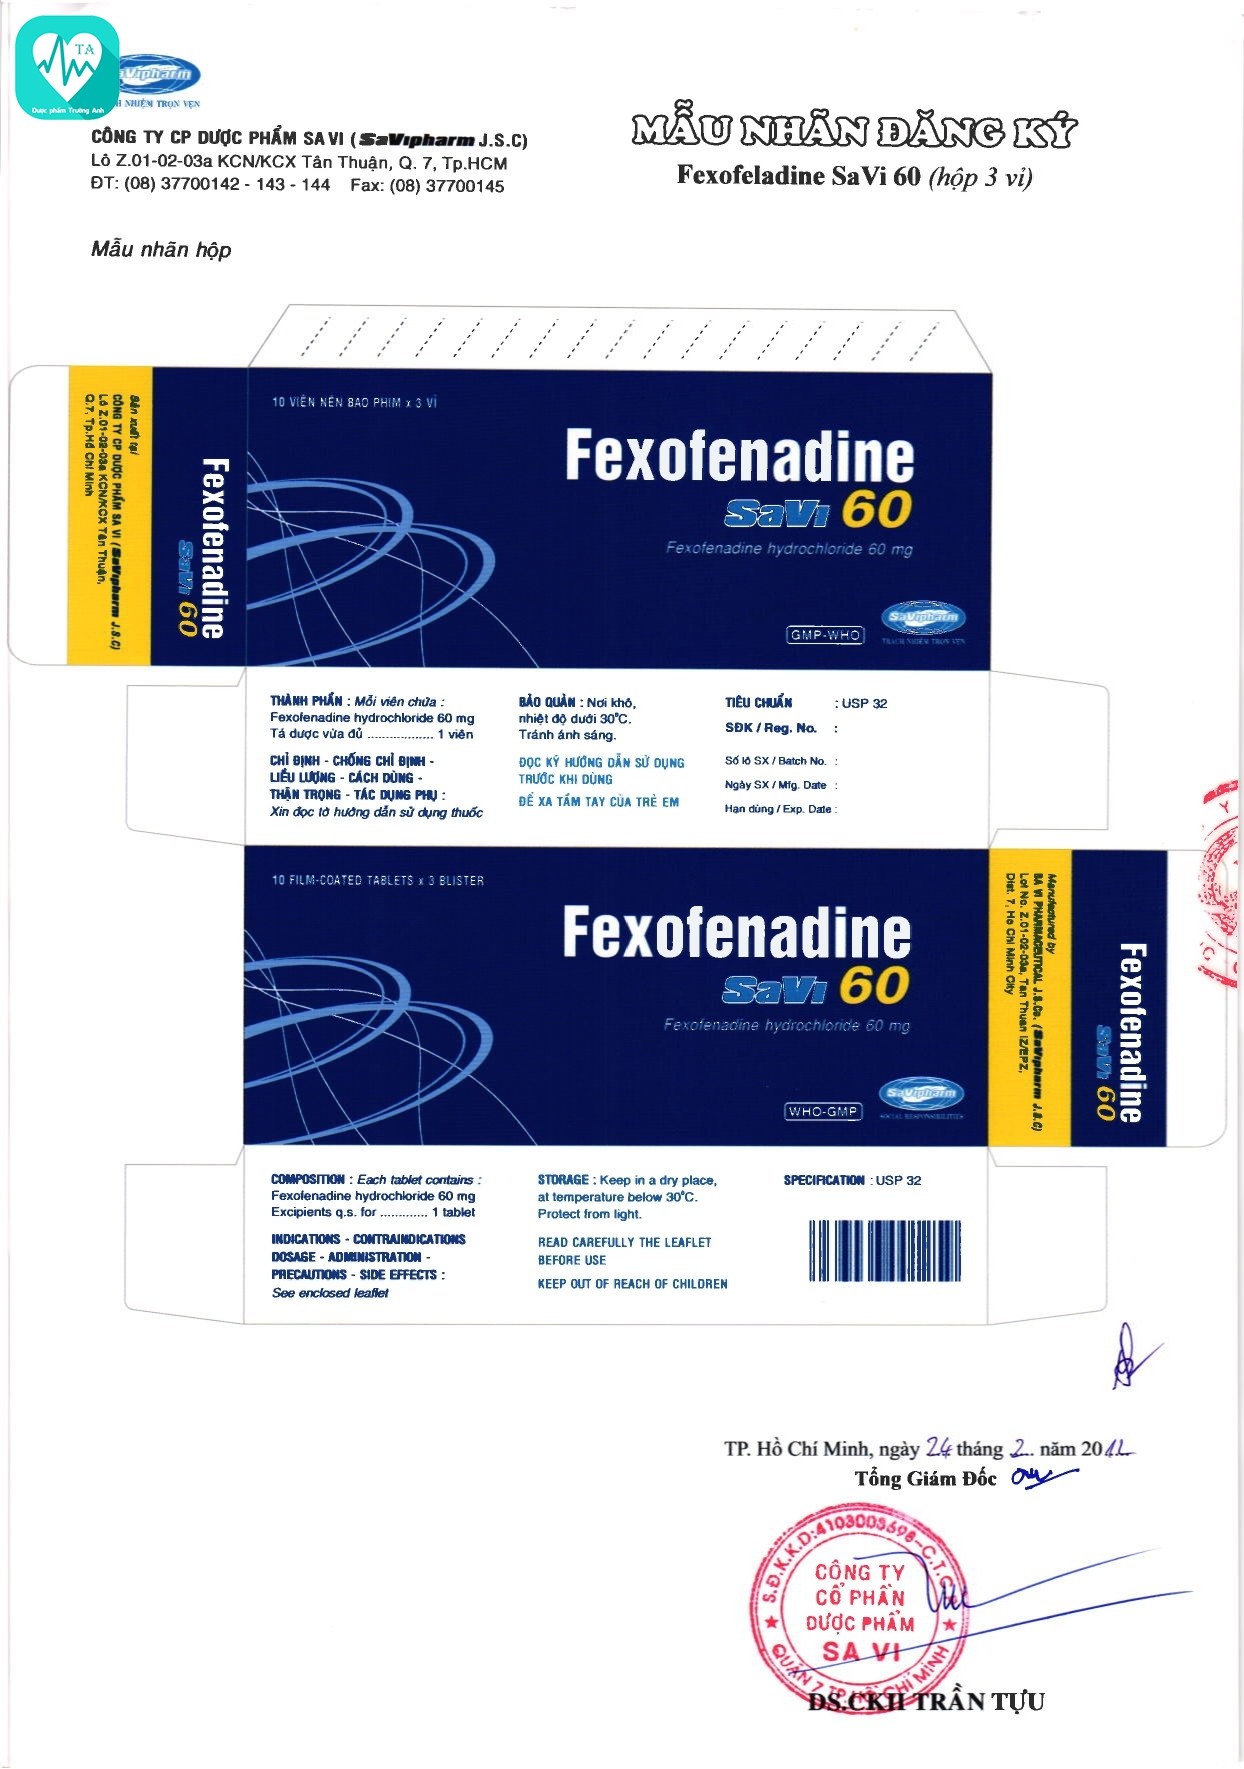 Fexofenadine savi 60 - Thuốc điều trị viêm mũi dị ứng hiệu quả của Savi